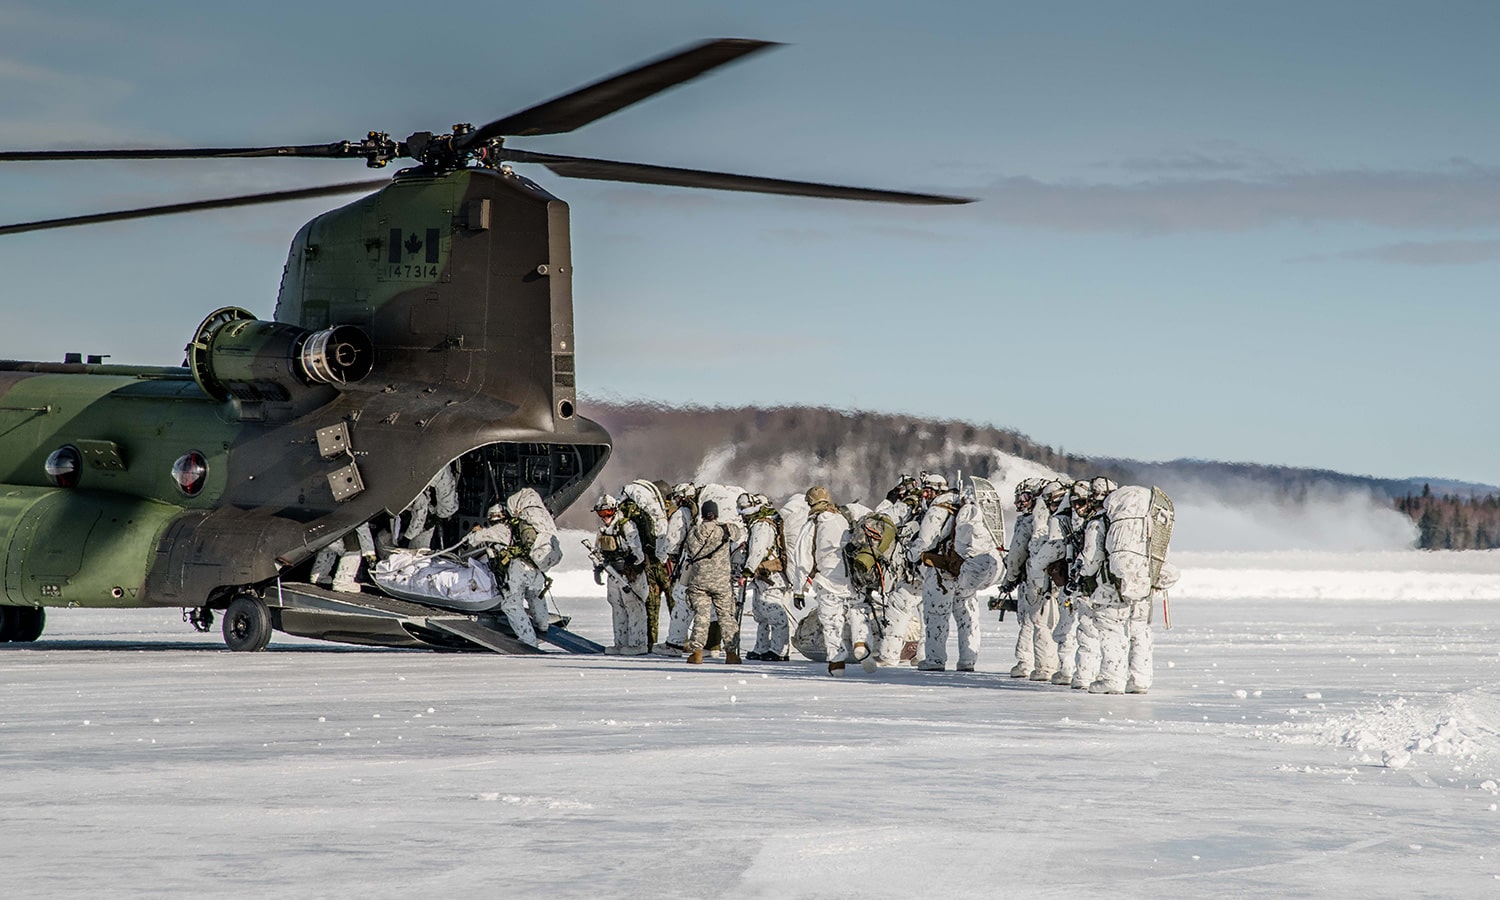 Membres chargeant un hélicoptère dans la neige